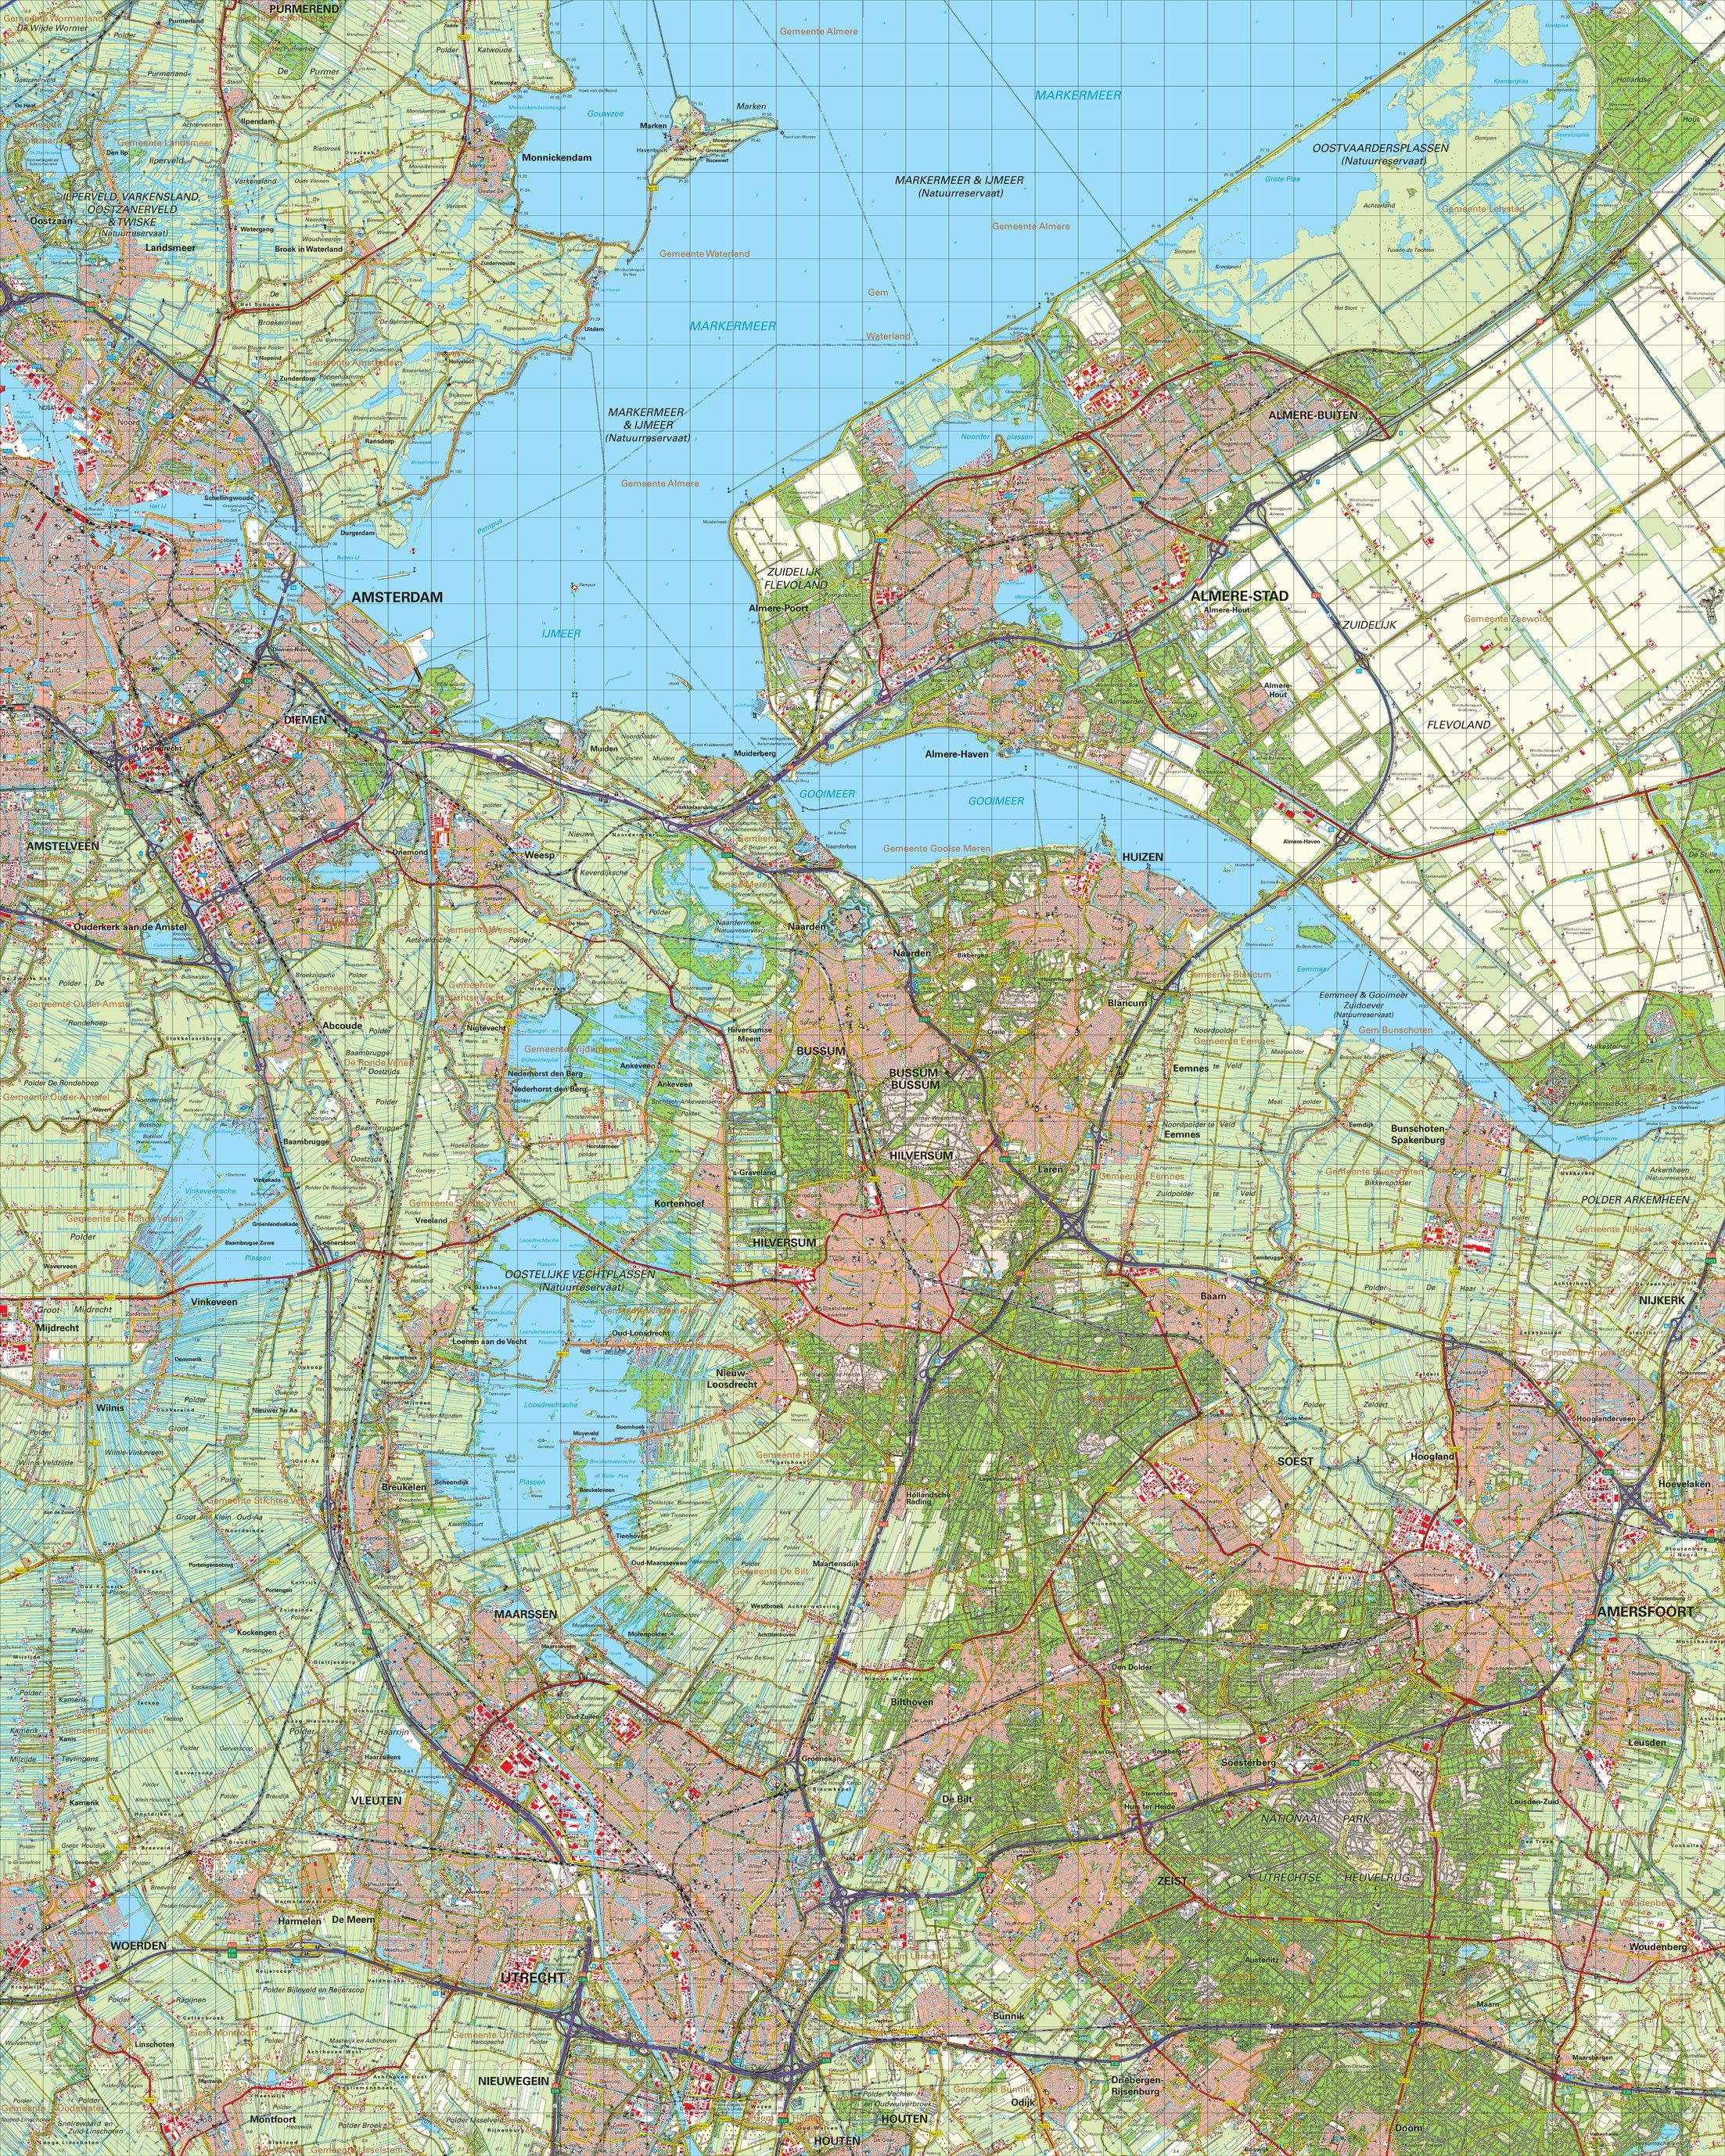 Topografische kaart schaal 1:50.000 (Amsterdam,Almere,Hilversum,Amersfoort,Utrecht)